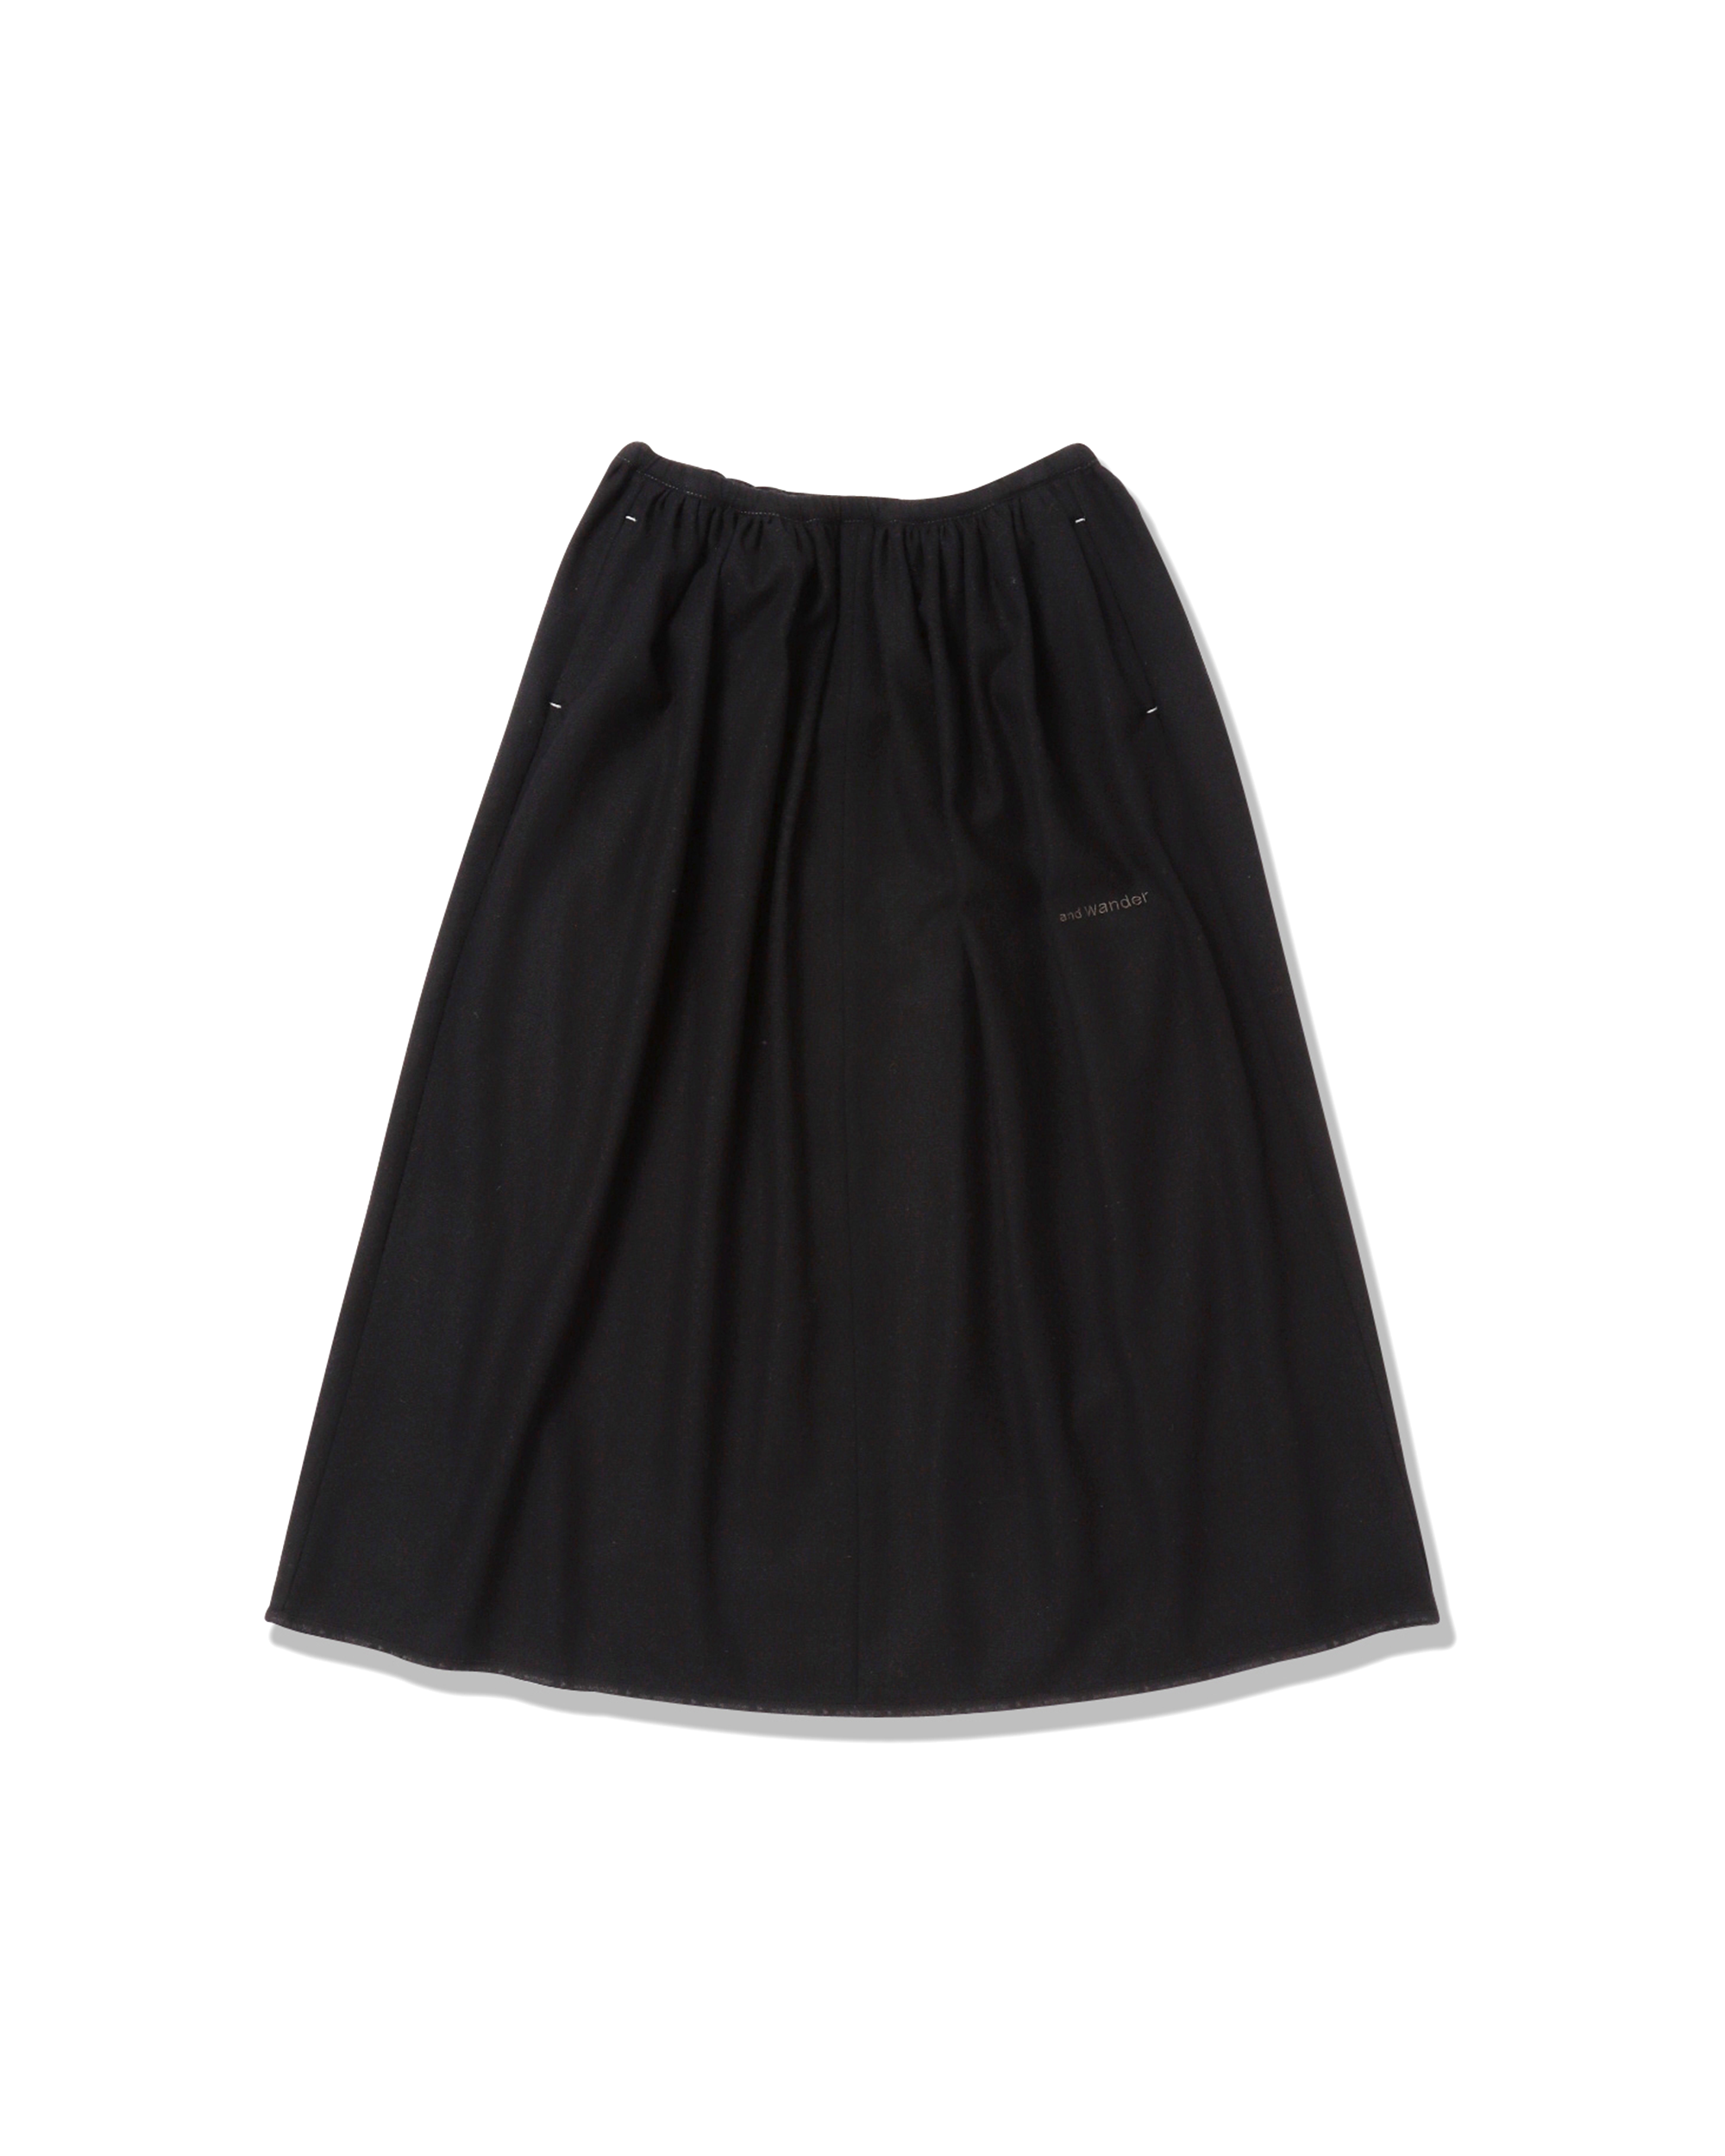 REWOOL Tweed Skirt - Black